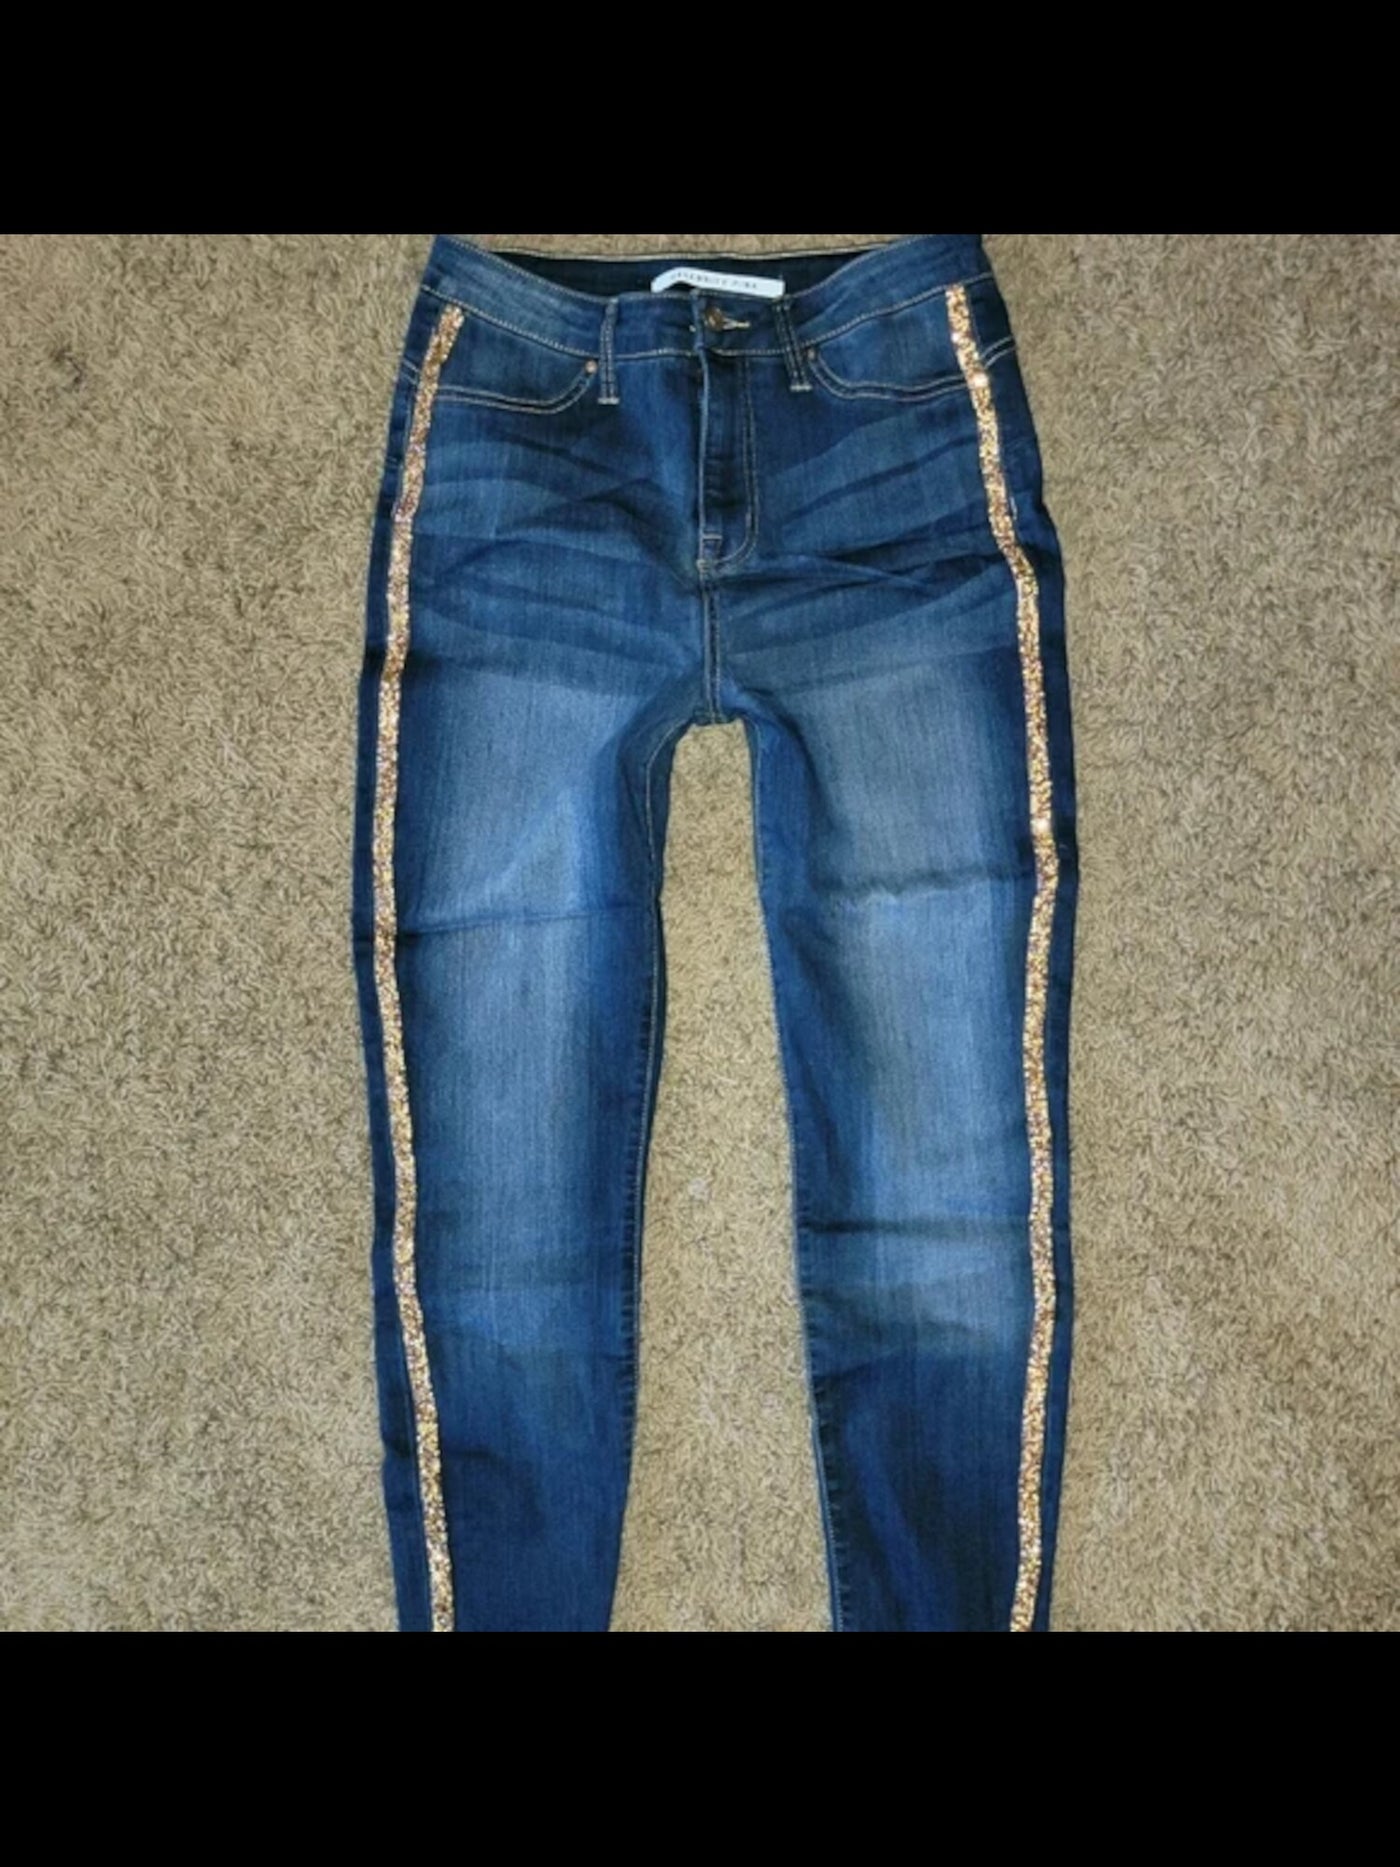 CELEBRITY PINK Womens Blue Denim Embellished Pocketed Zippered Skinny Jeans Juniors 9